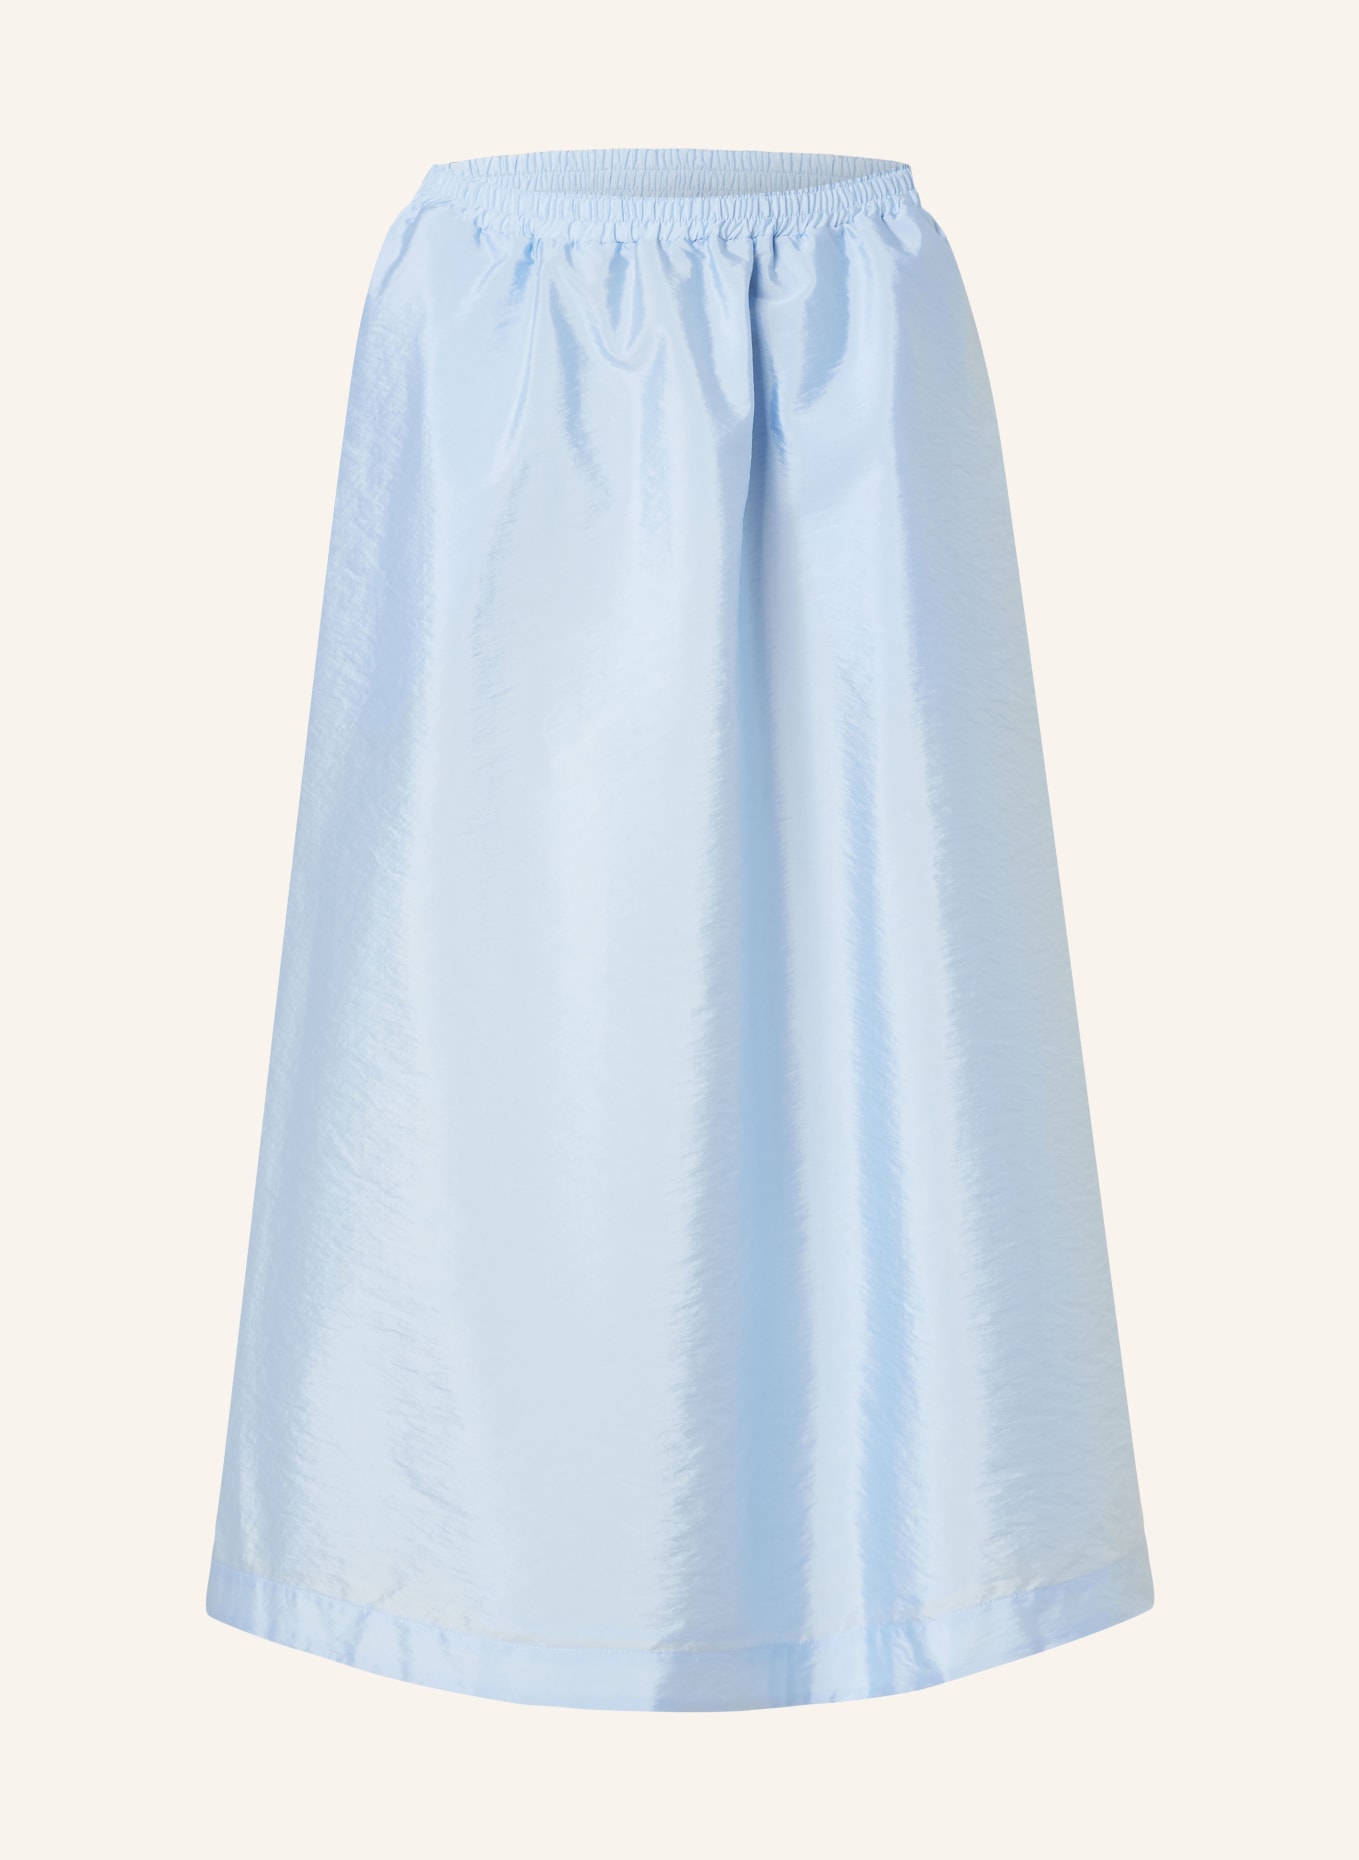 rich&royal Skirt, Color: 715 cotton blue (Image 1)